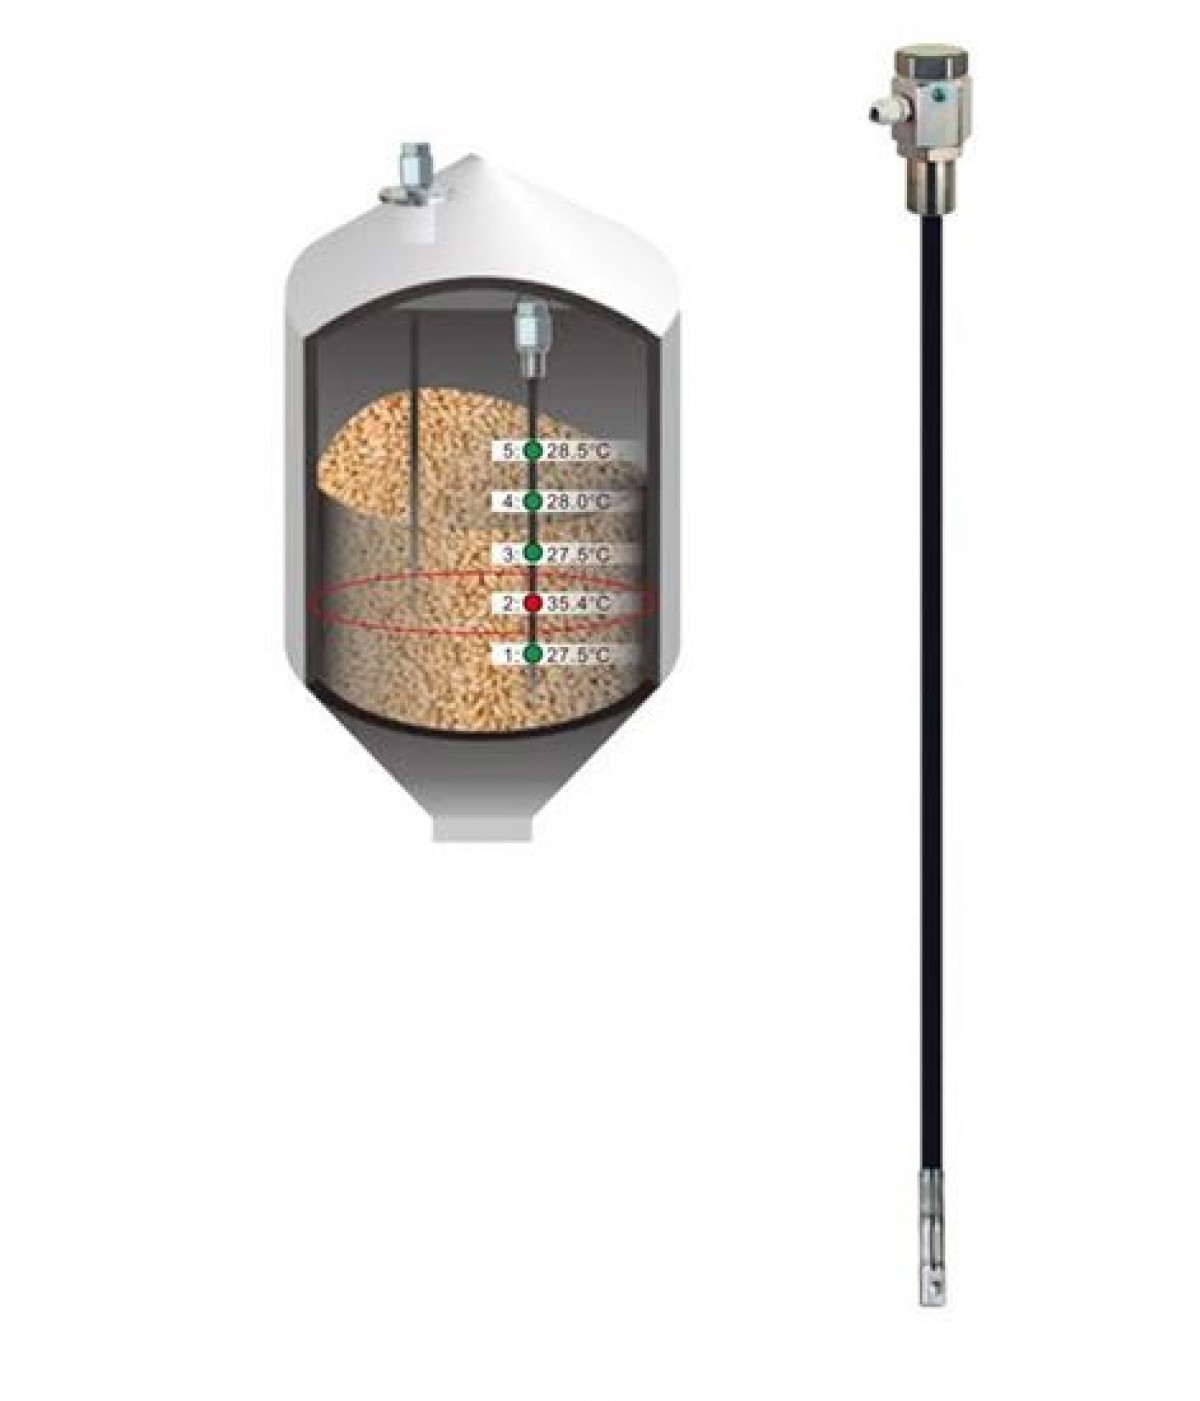 Sensor de Temperatura multipunto para silos de almacenamiento